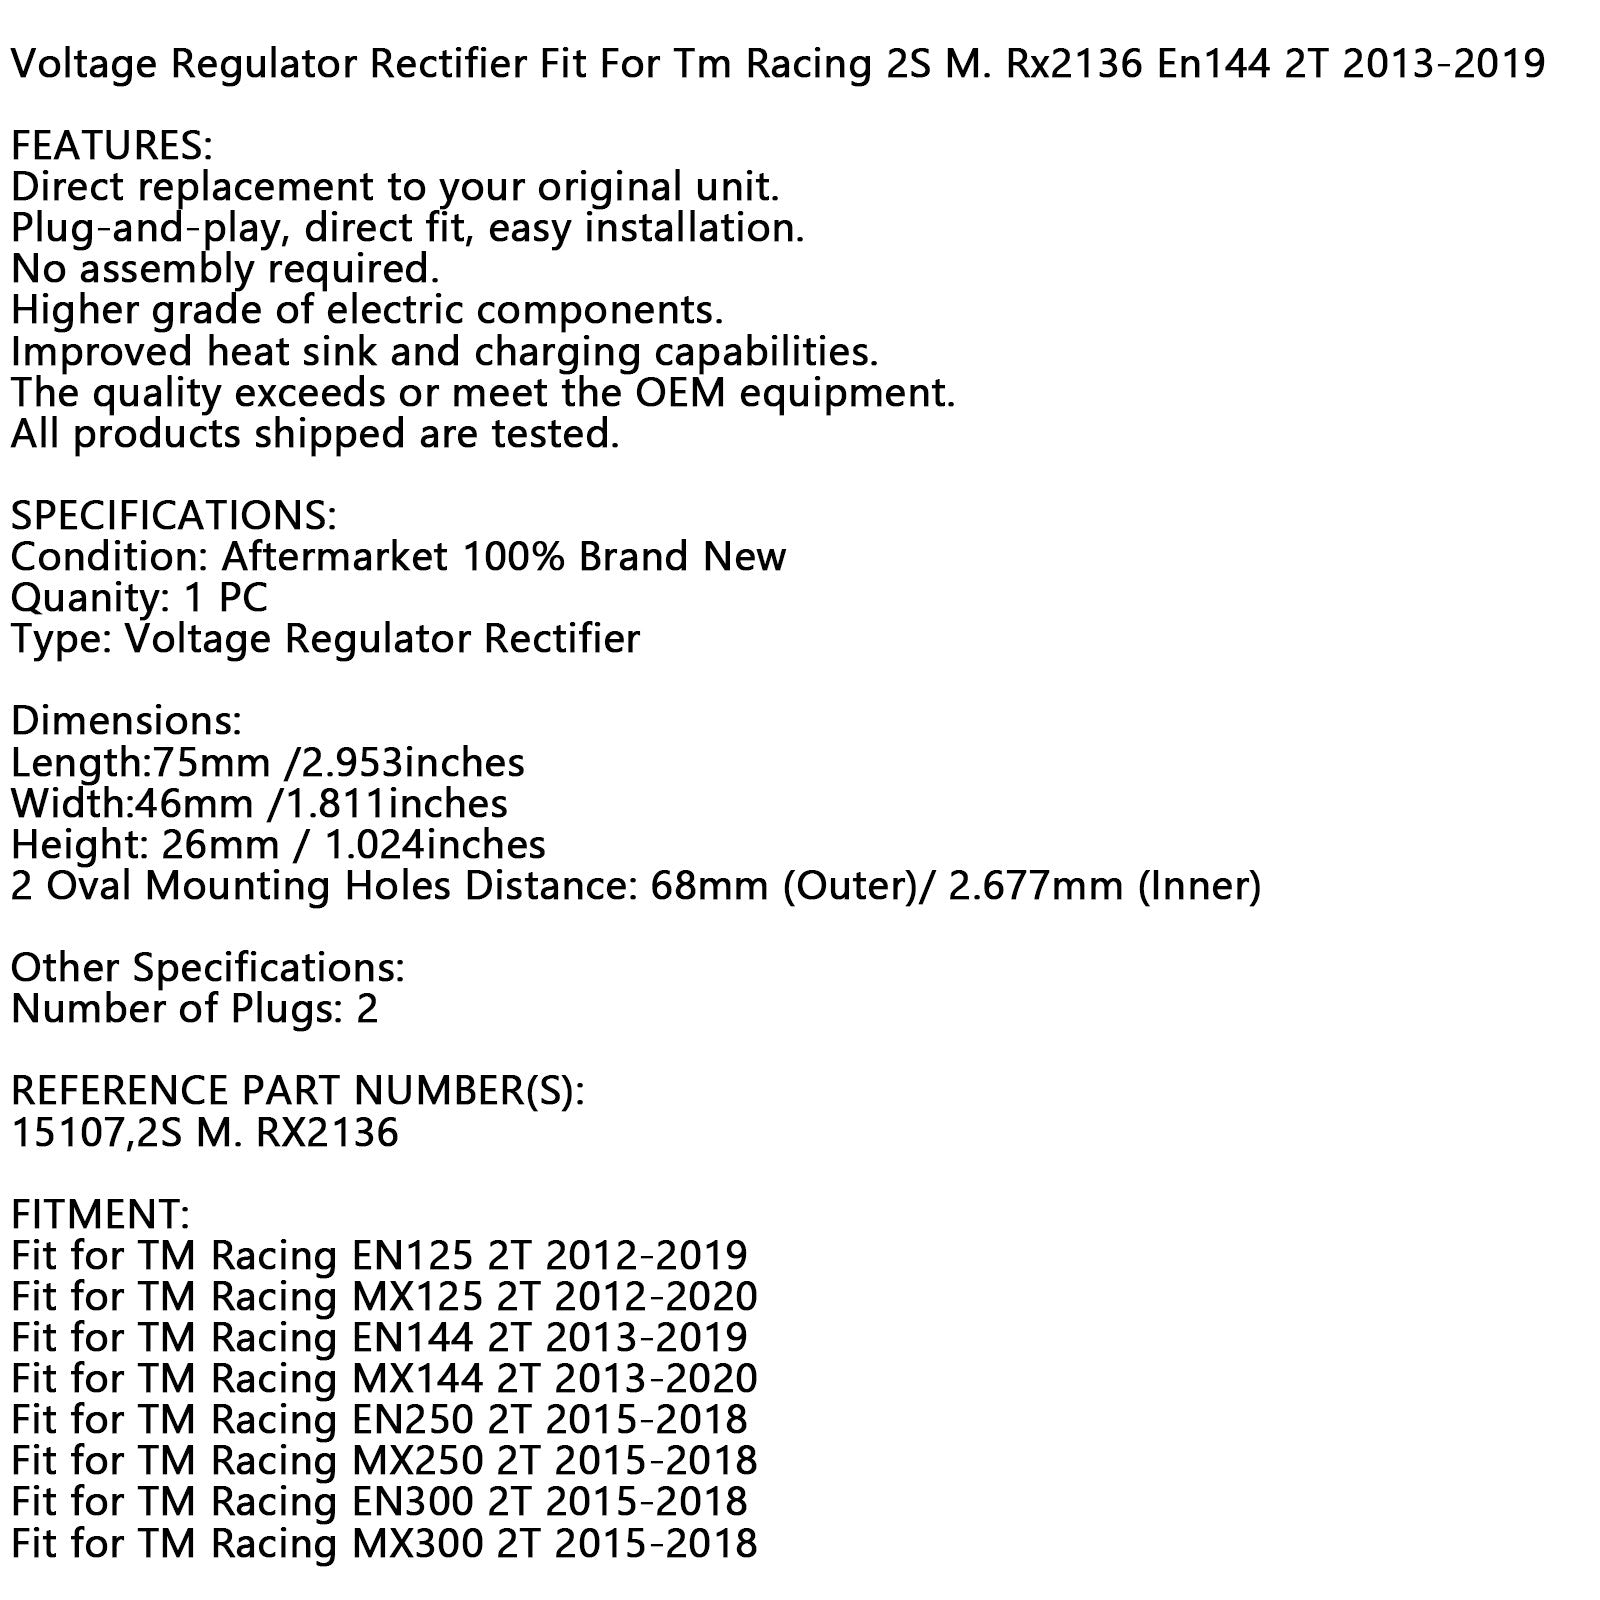 Voltage Regulator Rectifier Fit For Tm Racing 2S M. Rx2136 En144 2T 2013-2019